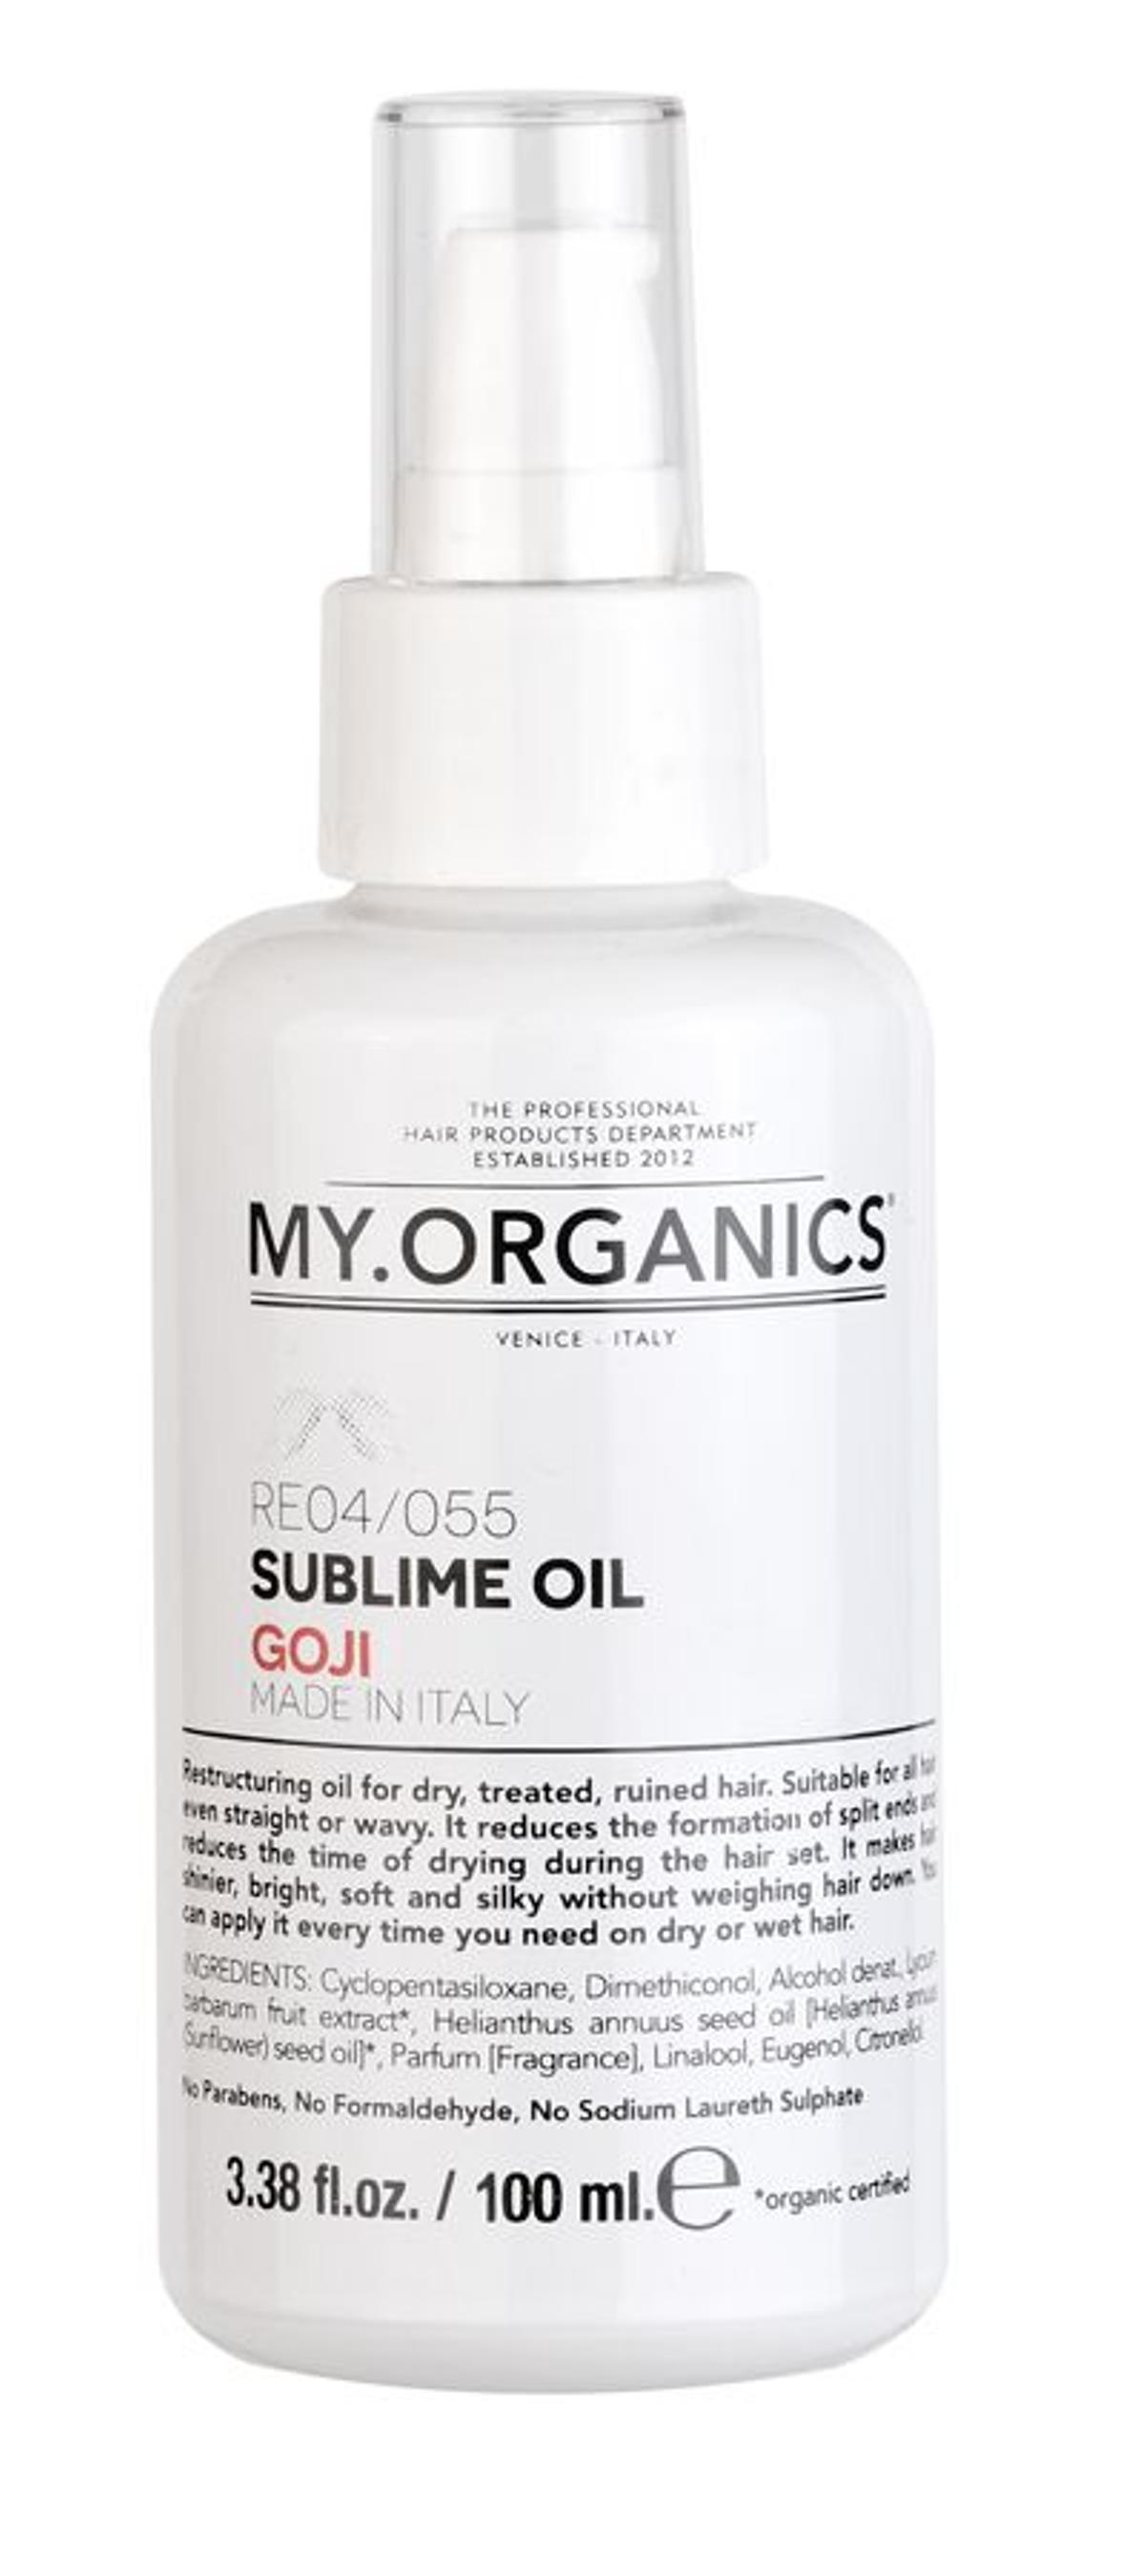 Sublime Oil Goji, de My.Organics